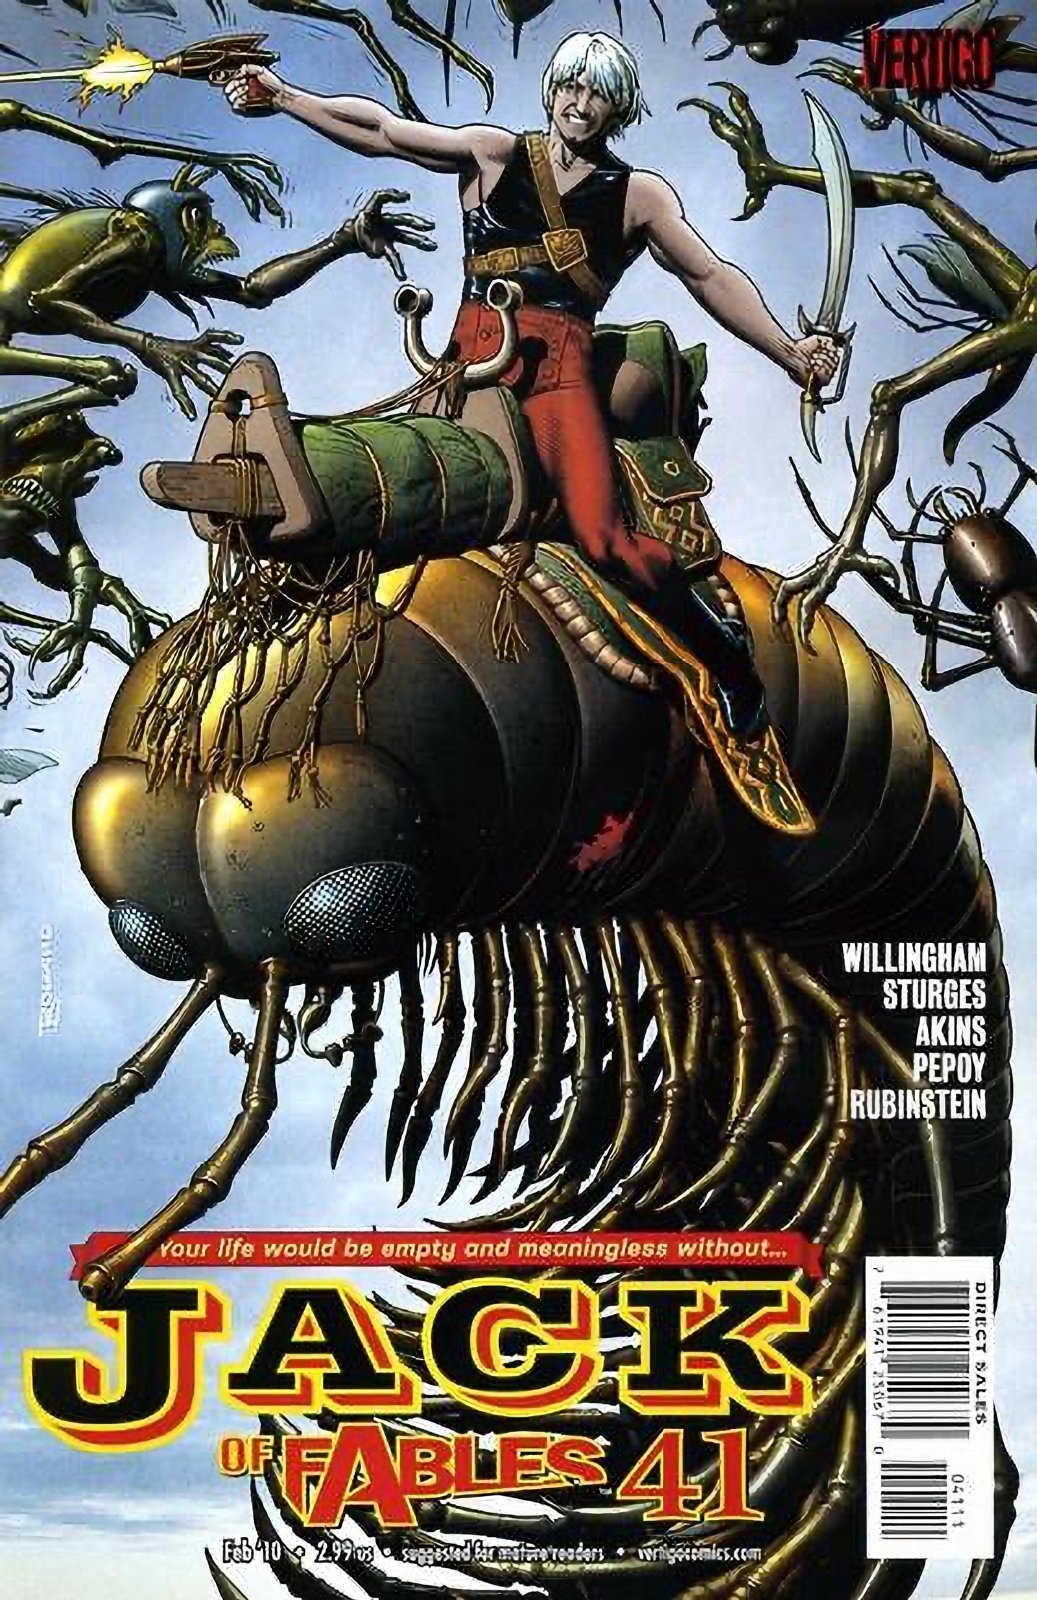 Jack of Fables #41 (2006-2011) Vertigo Comics